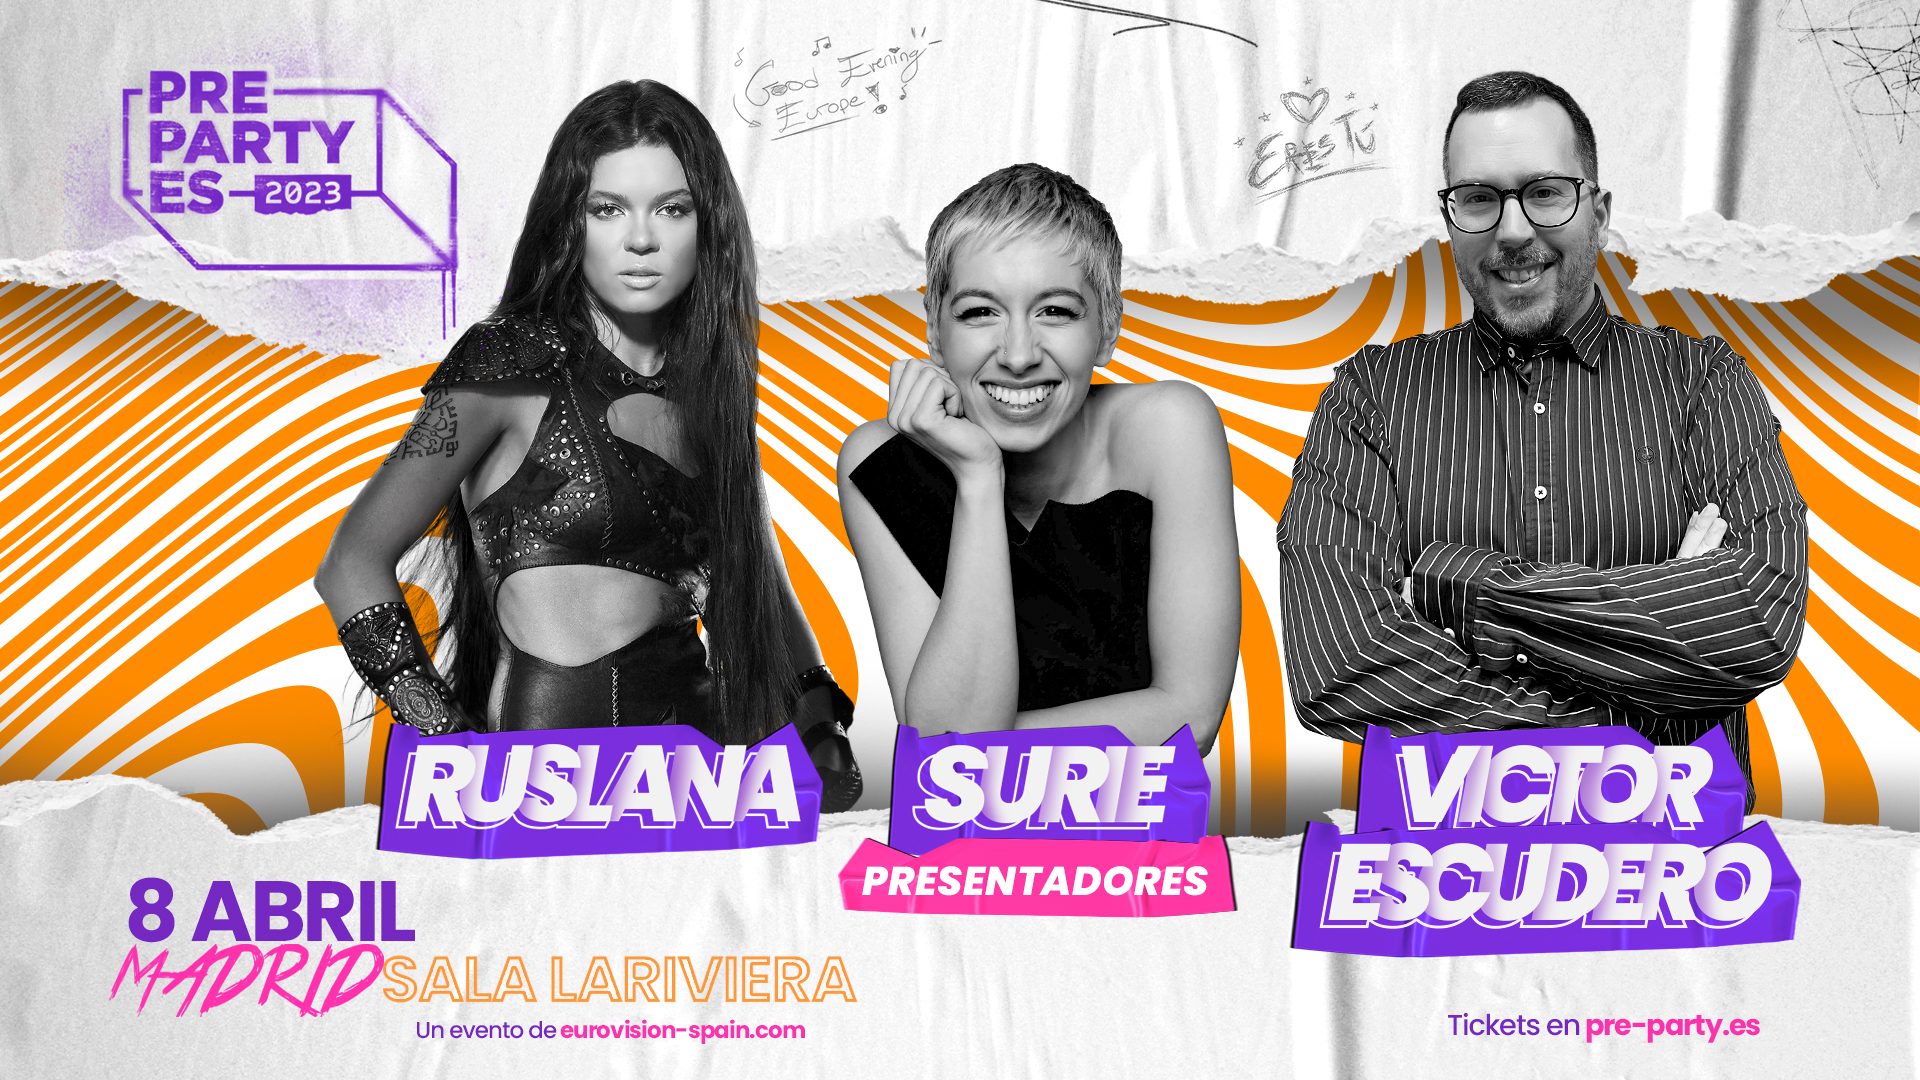 Ruslana, SuRie y Víctor Escudero serán los presentadores de la PreParty ES el 8 de abril